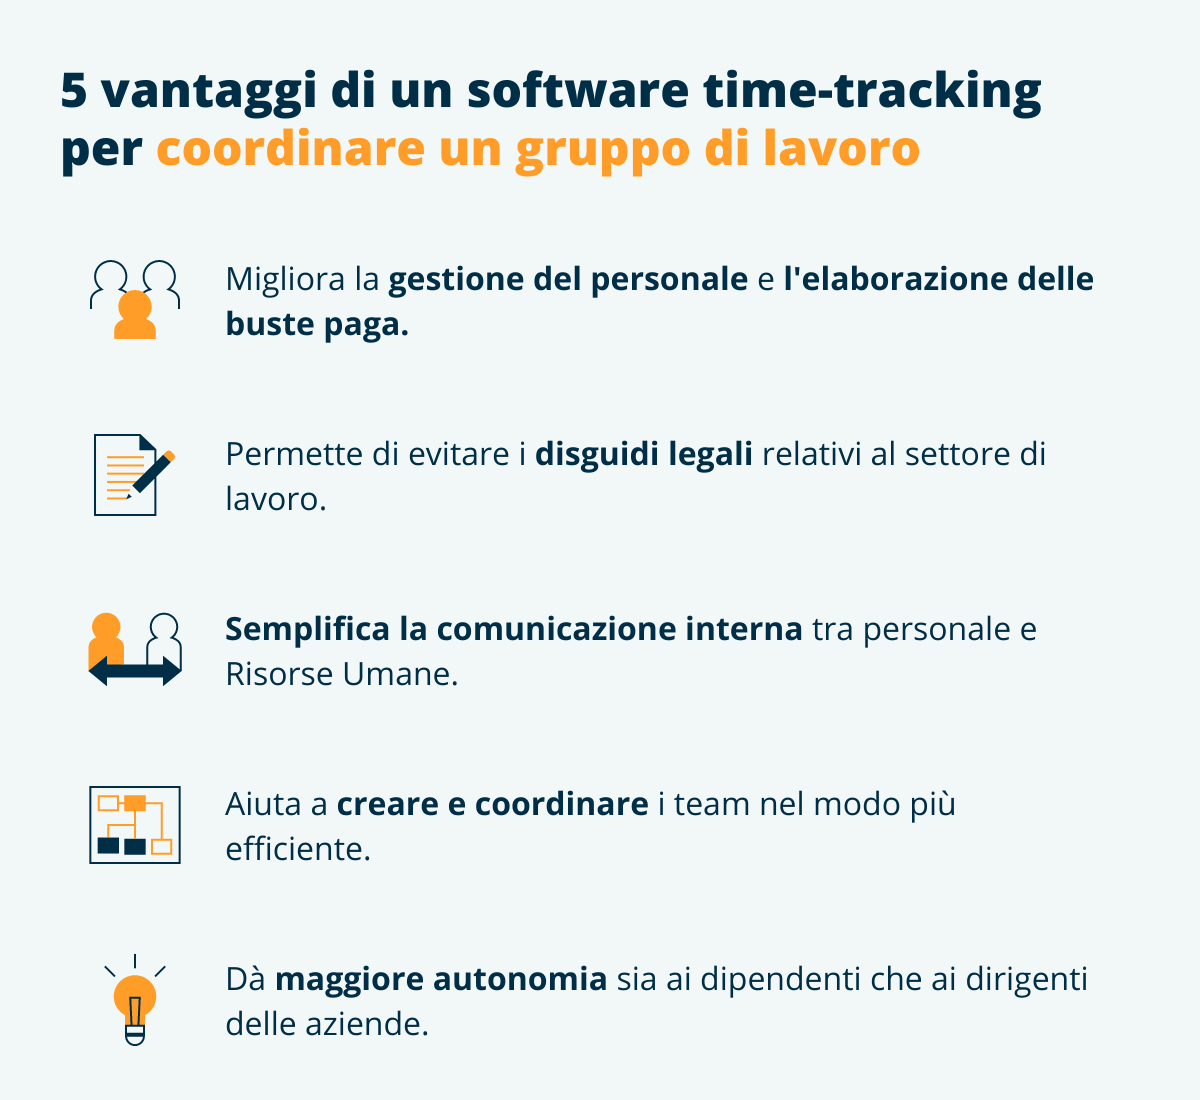 vantaggi di un software di time tracking per coordinare un gruppo di lavoro